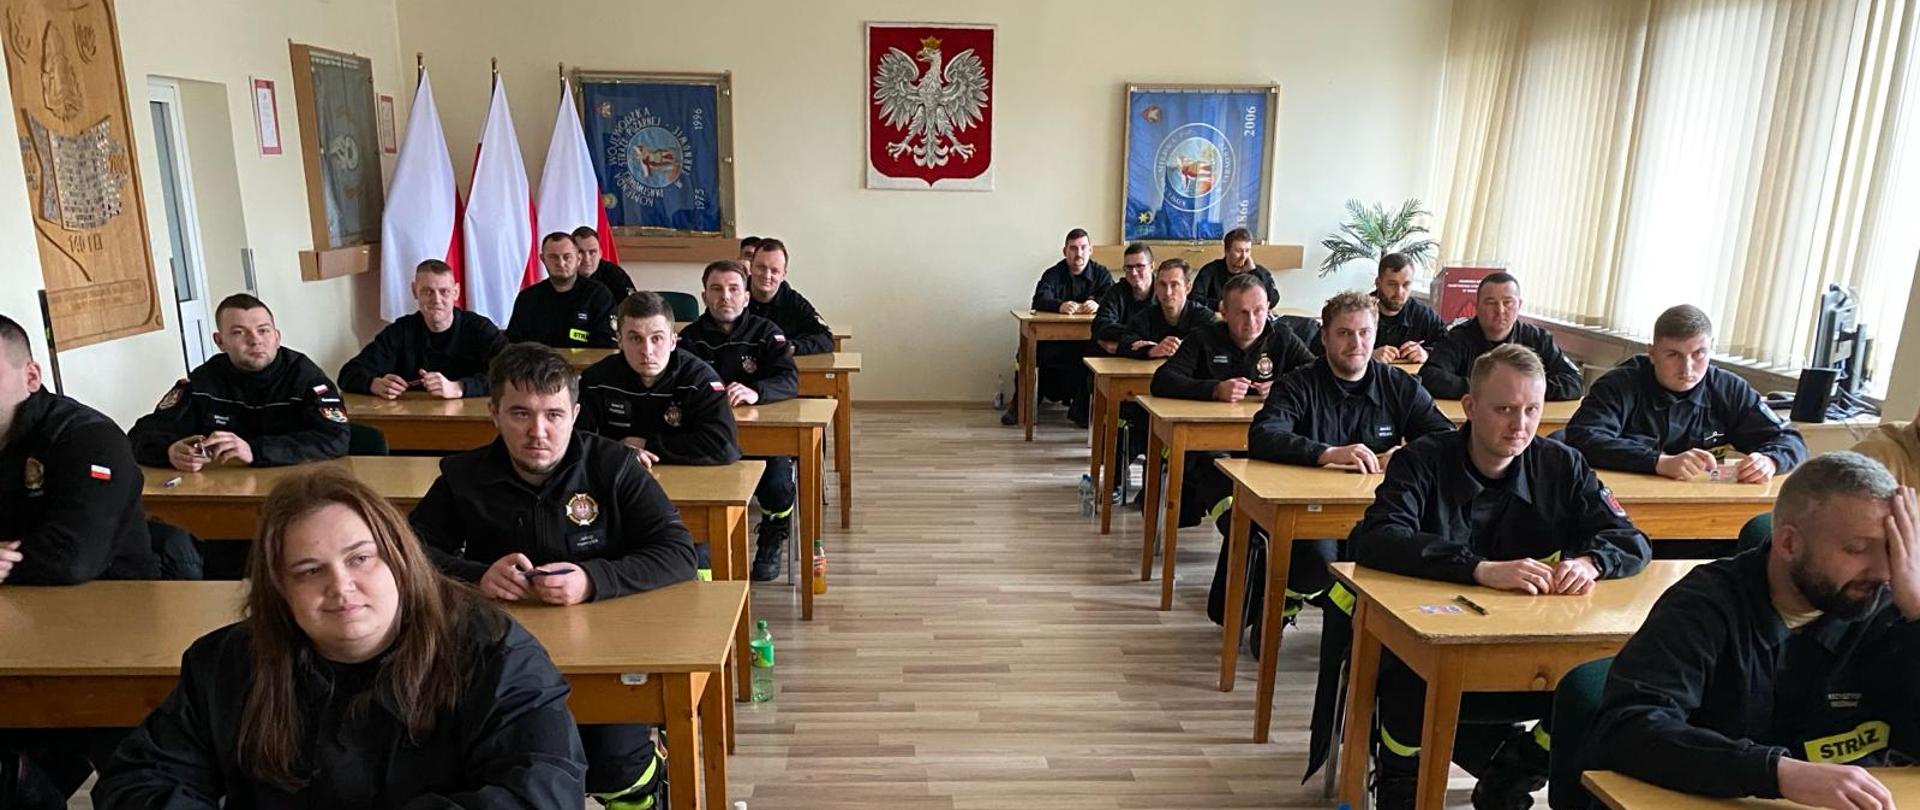 Zdjęcie przedstawia strażaków przed egzaminem teoretycznym w Sali szkoleniowej, w tle widoczne godło Polski.